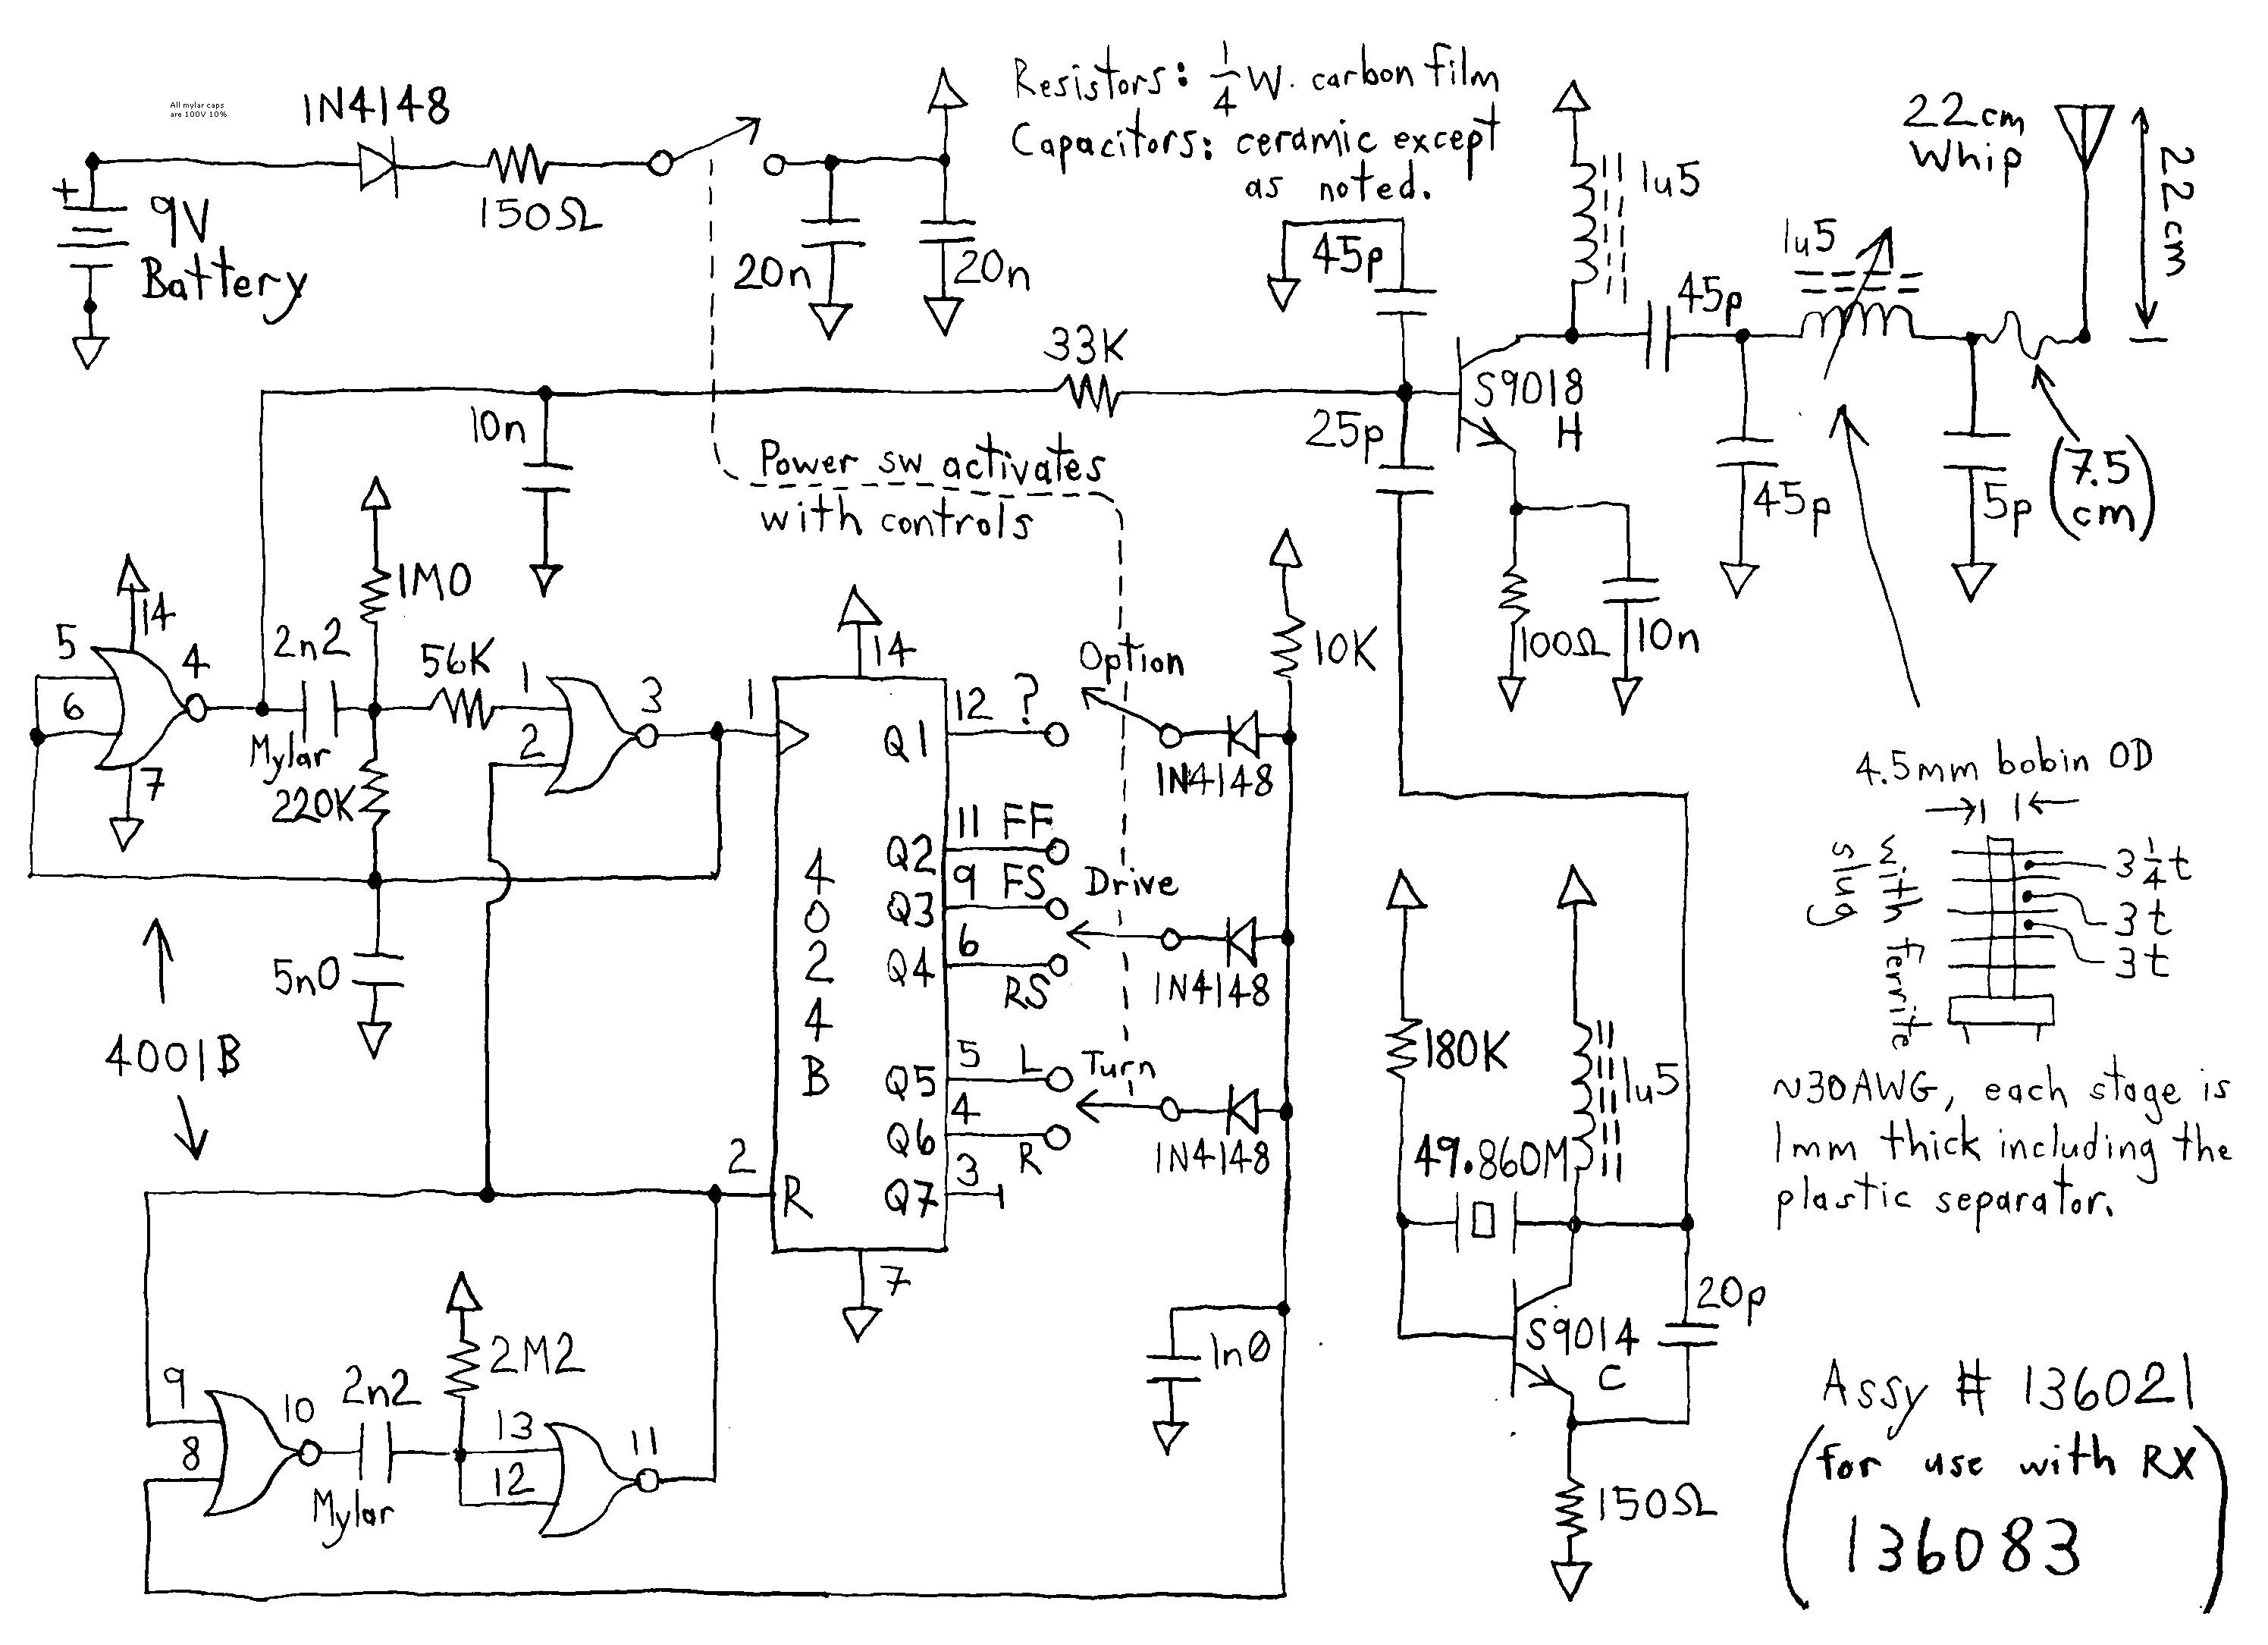 Car Audio 2 Amp Wiring Diagram Multiple Amplifier Wiring Diagram Best Amp Wiring Diagram Car Of Car Audio 2 Amp Wiring Diagram